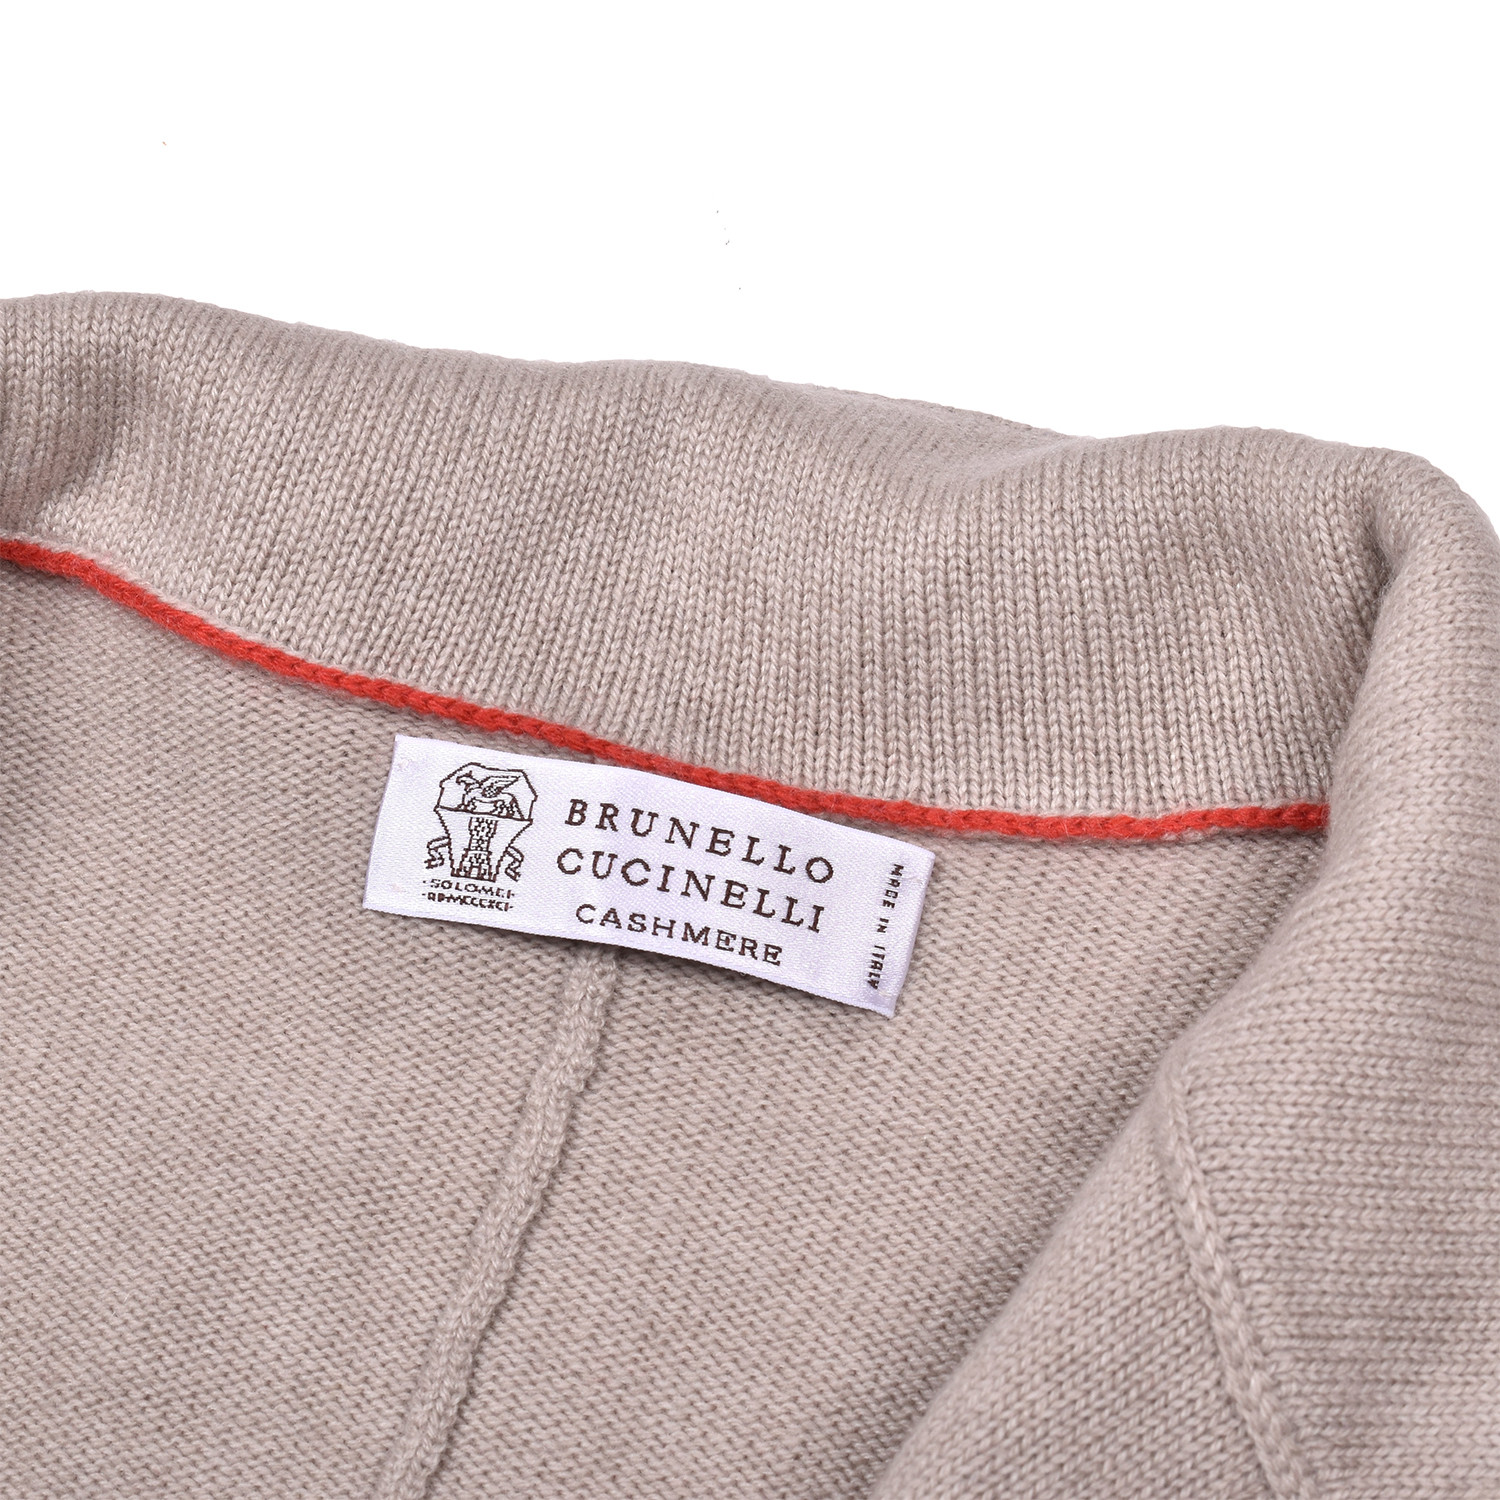 Baden Cashmere Cardigan Sweater // Beige (Euro: 50) - Designer Fashion ...